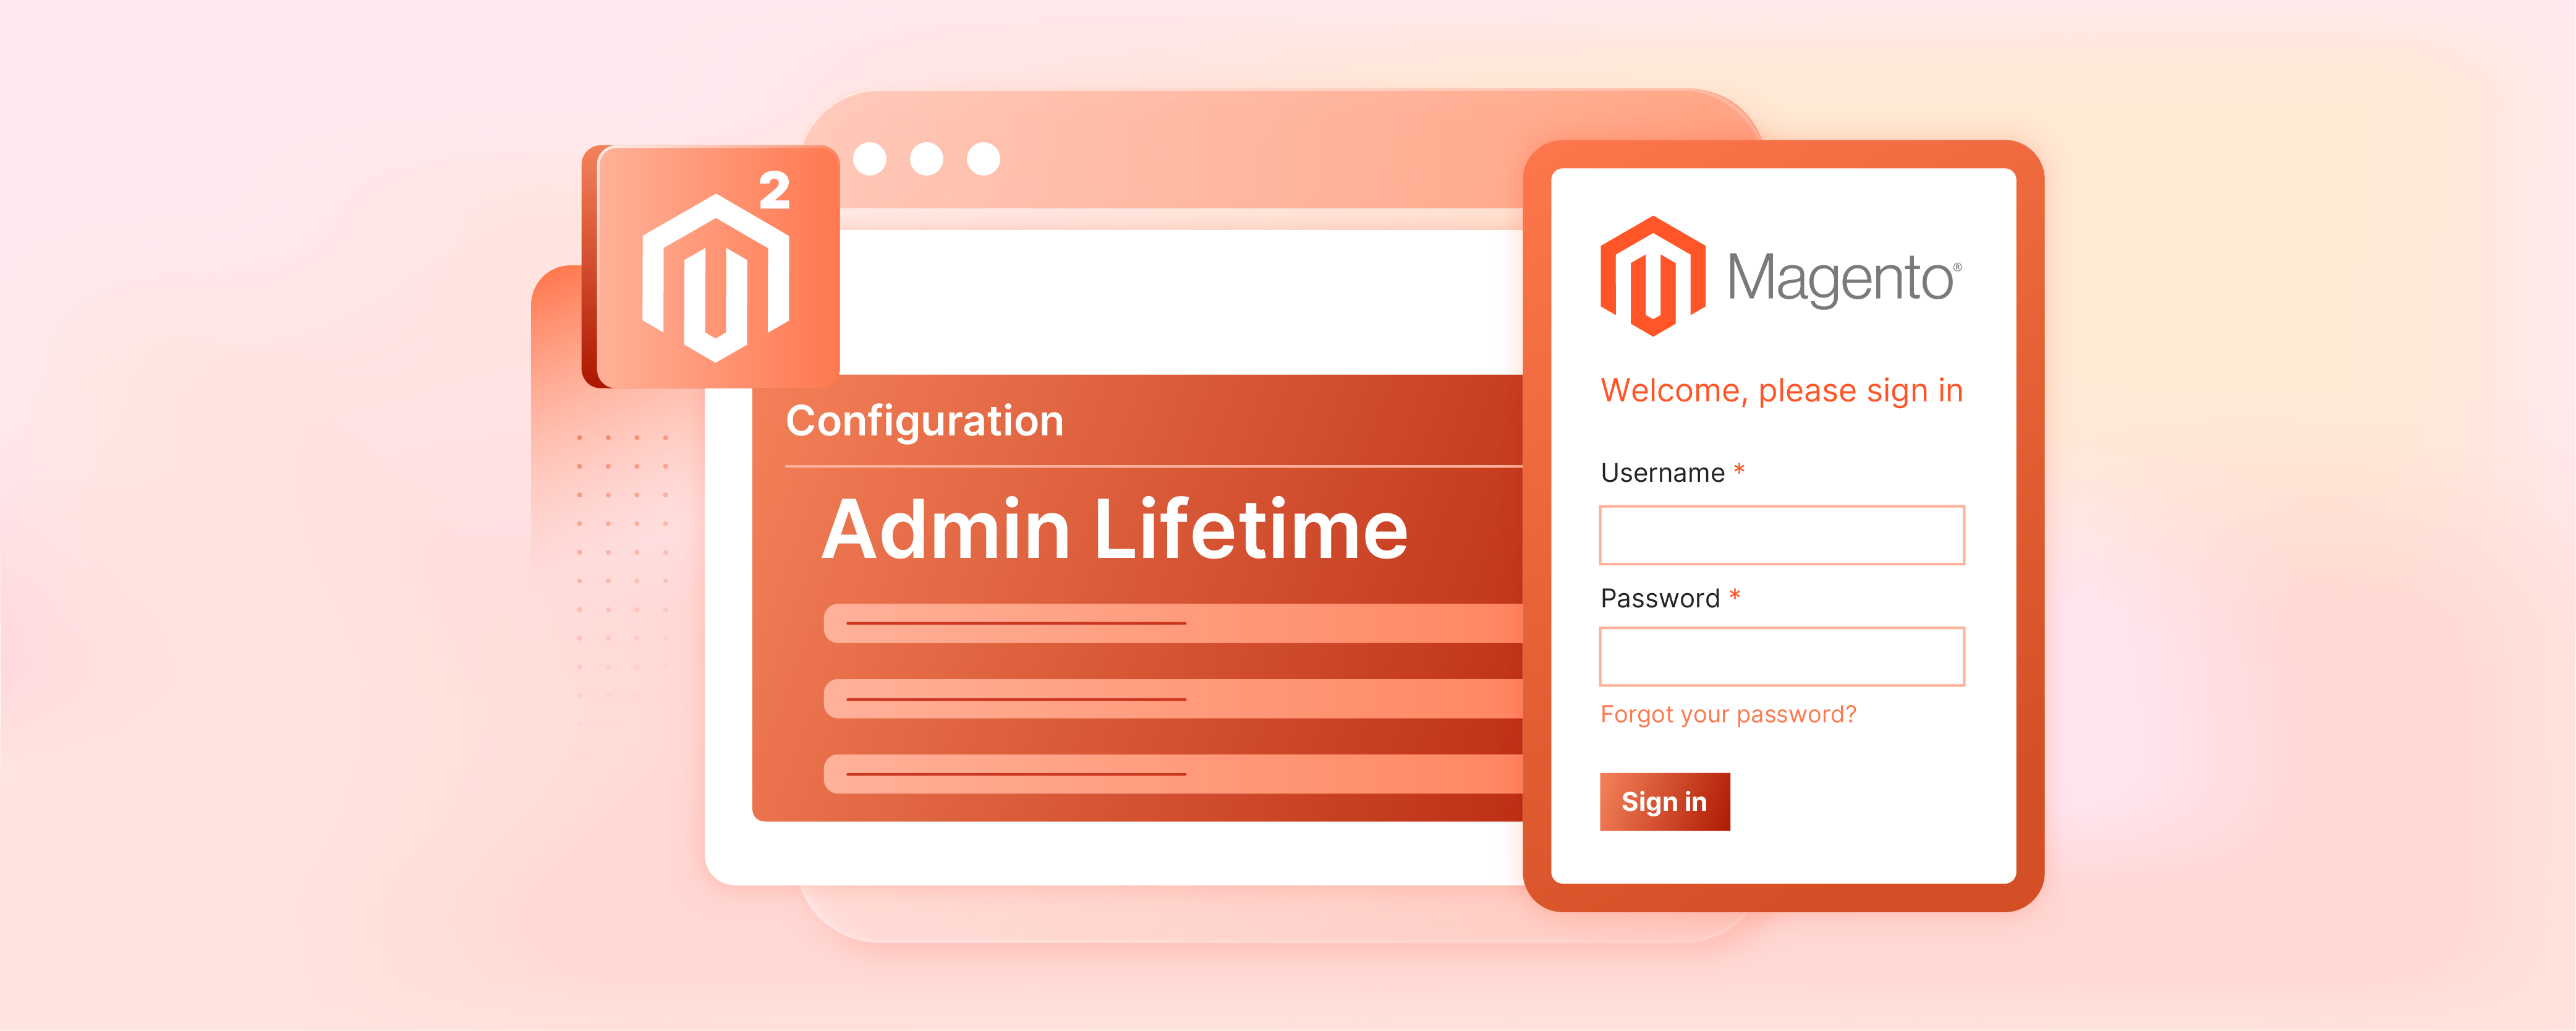 How to Configure Magento 2 Admin Session Lifetime?